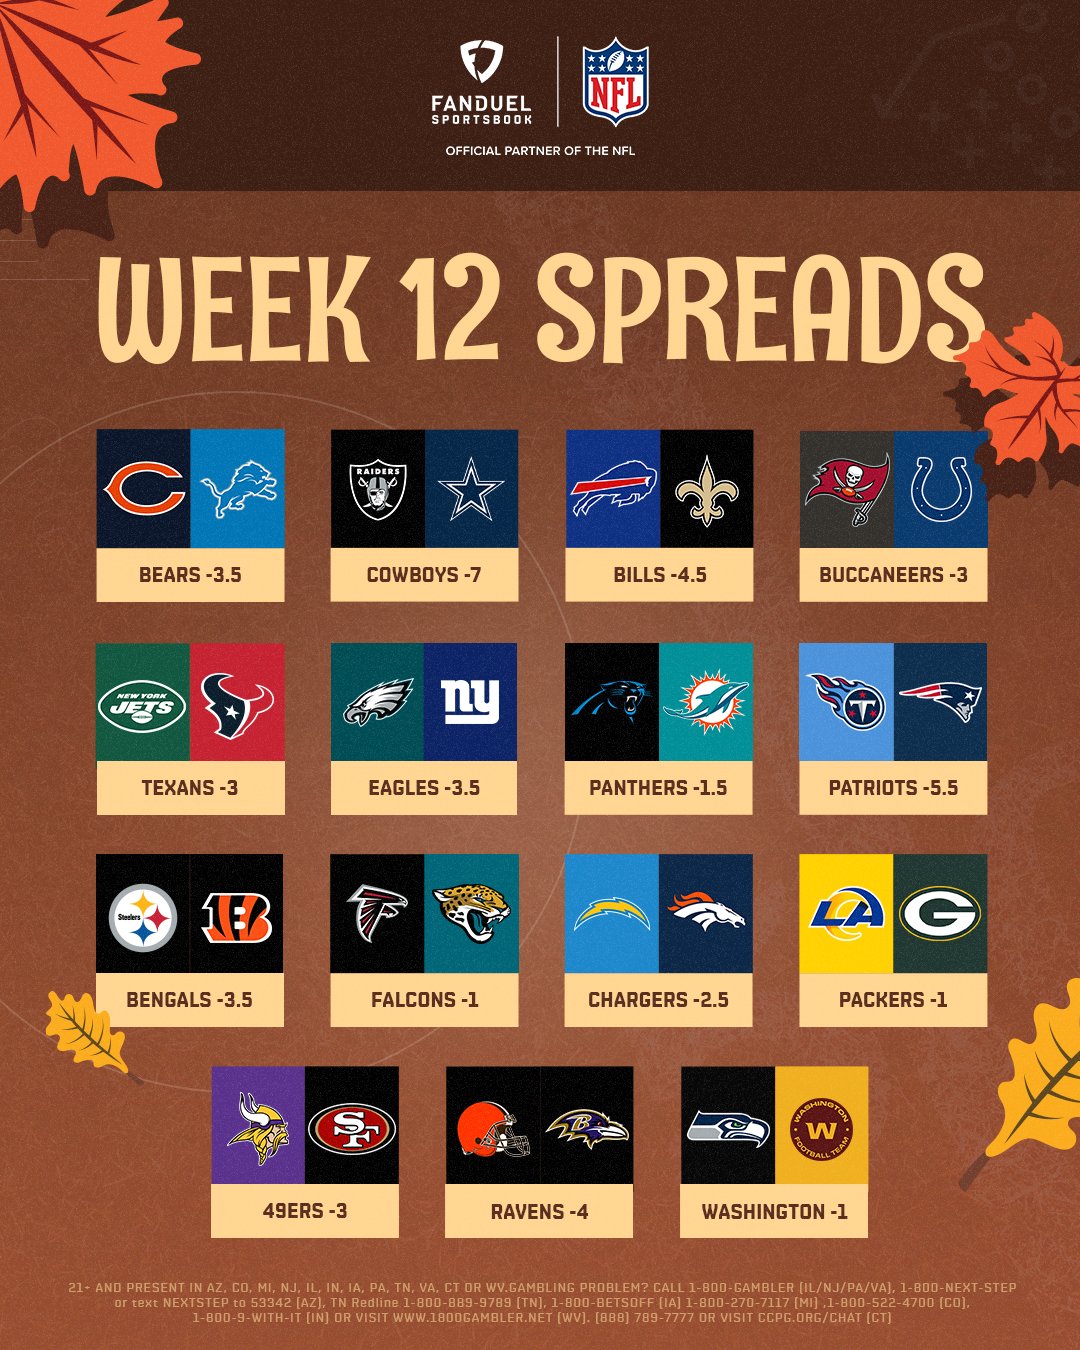 spreads week 12